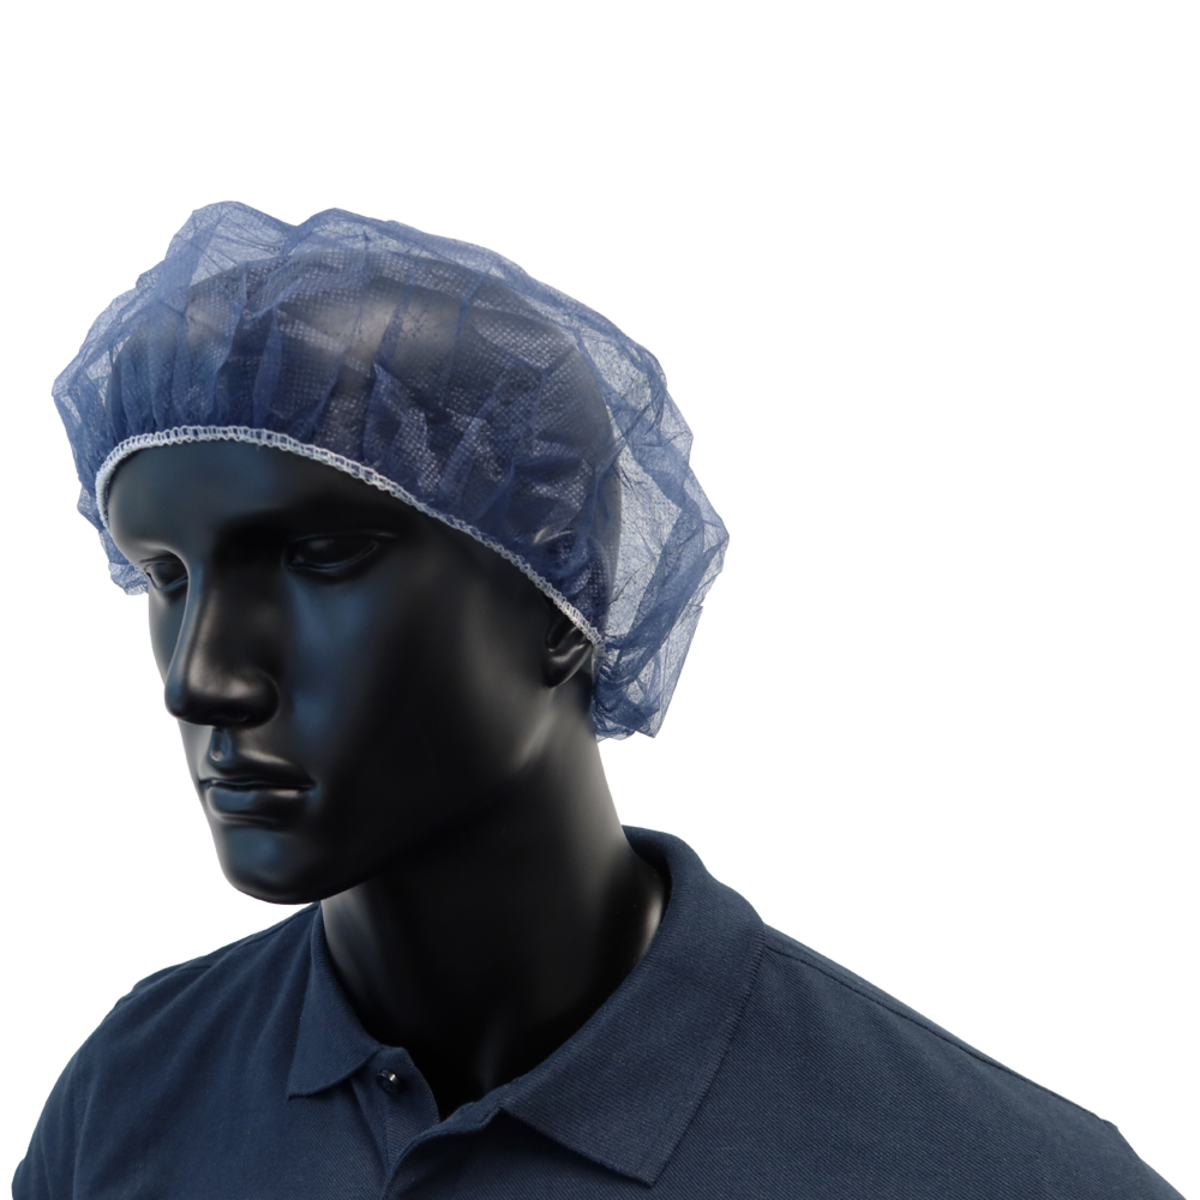 Comfort Baretthaube - Einweg-Kopfschutz Haarnetz Blau einmal Benutzung - 100 Stück Ø 52 cm ⭐